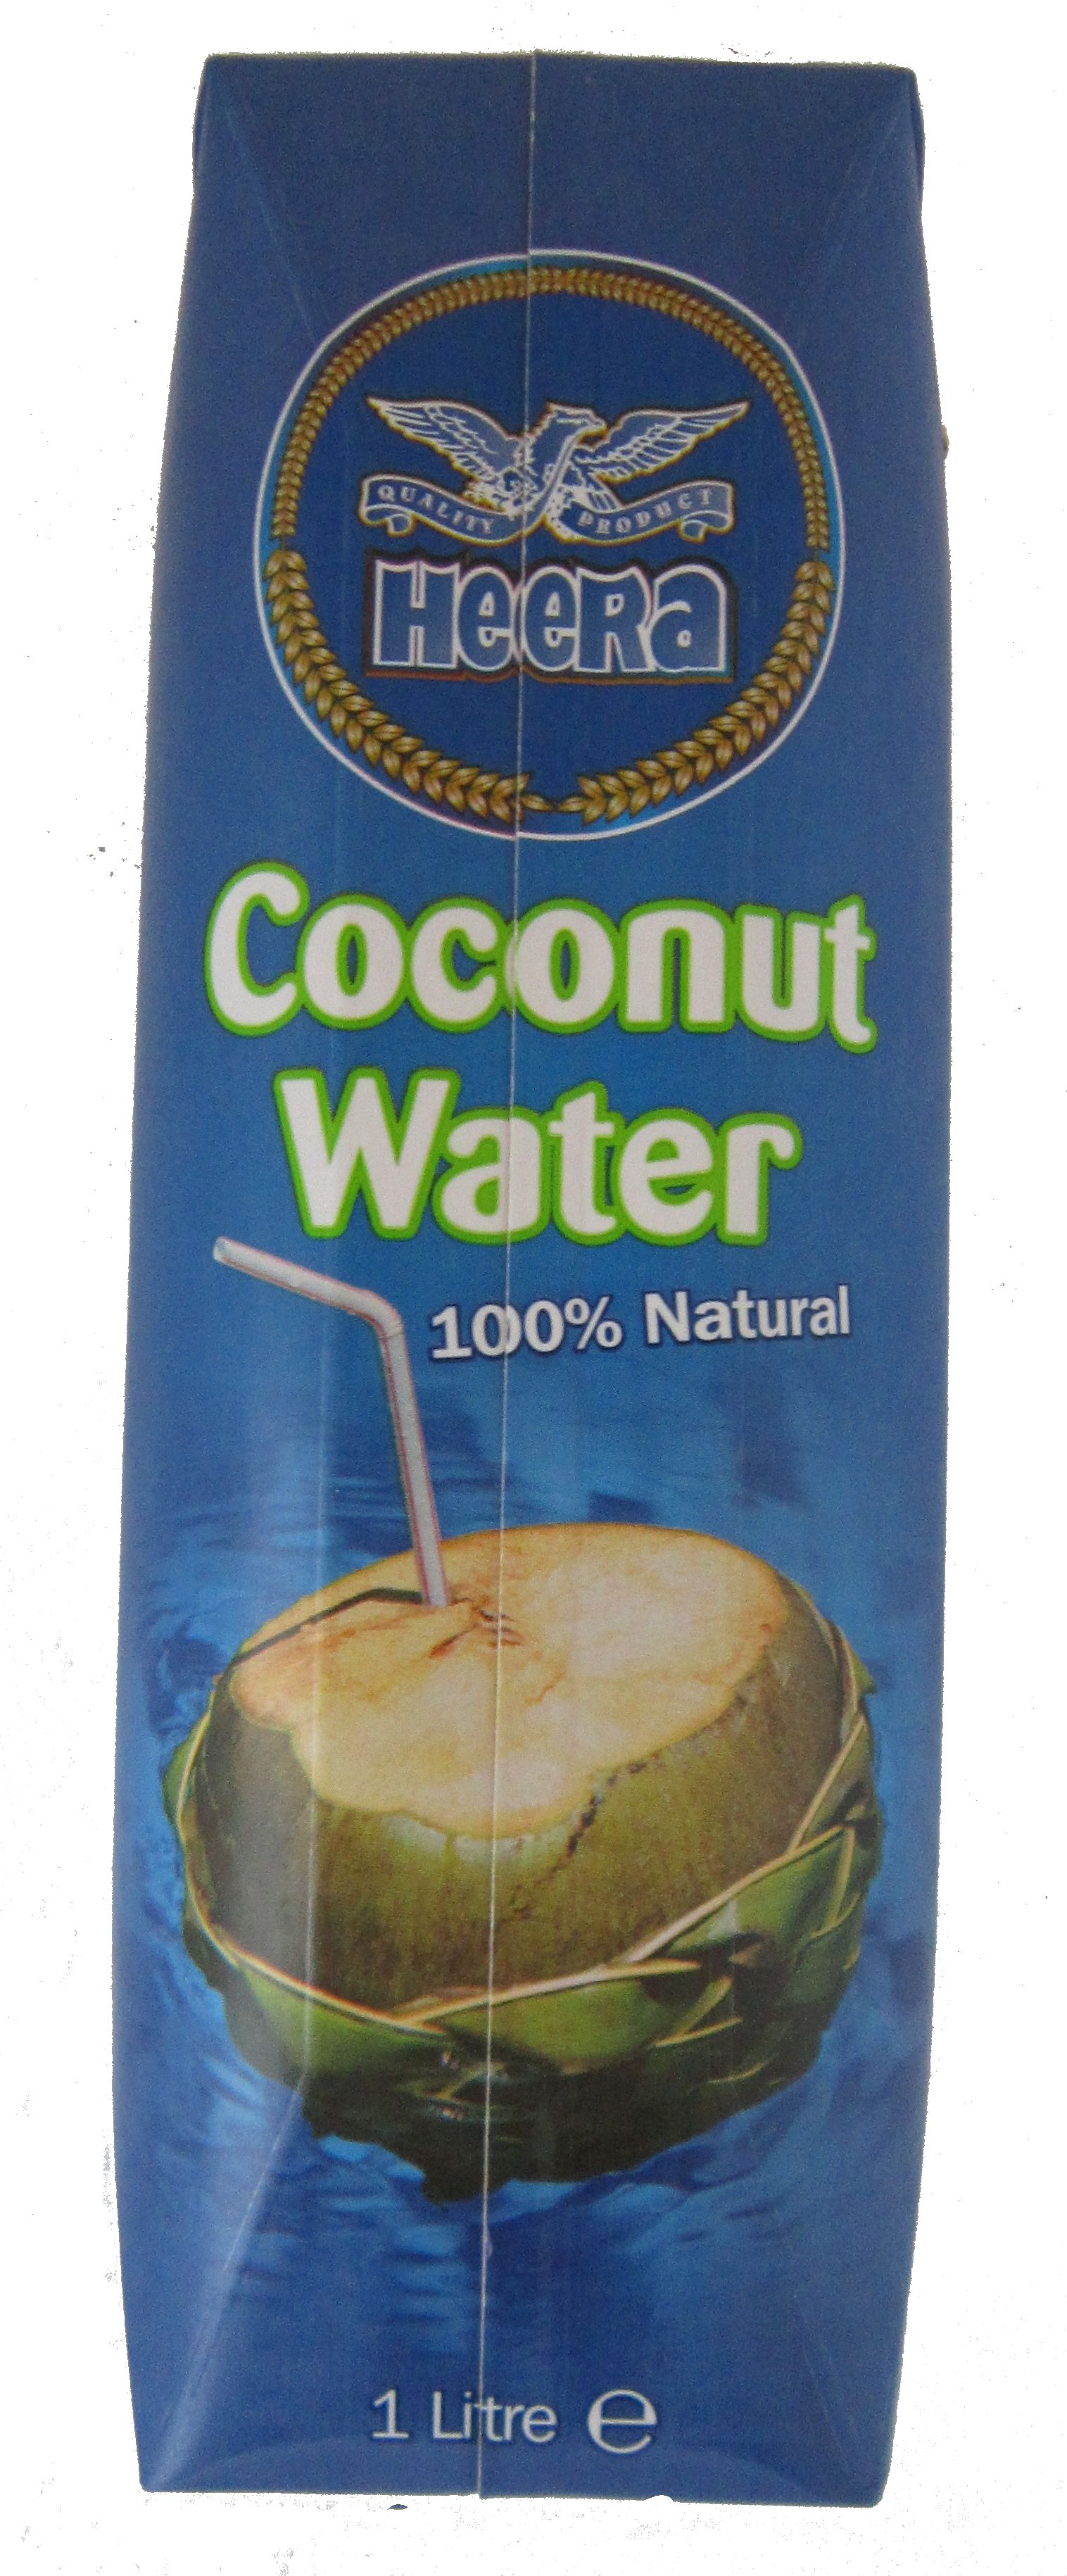 Heera Coconut Water Image